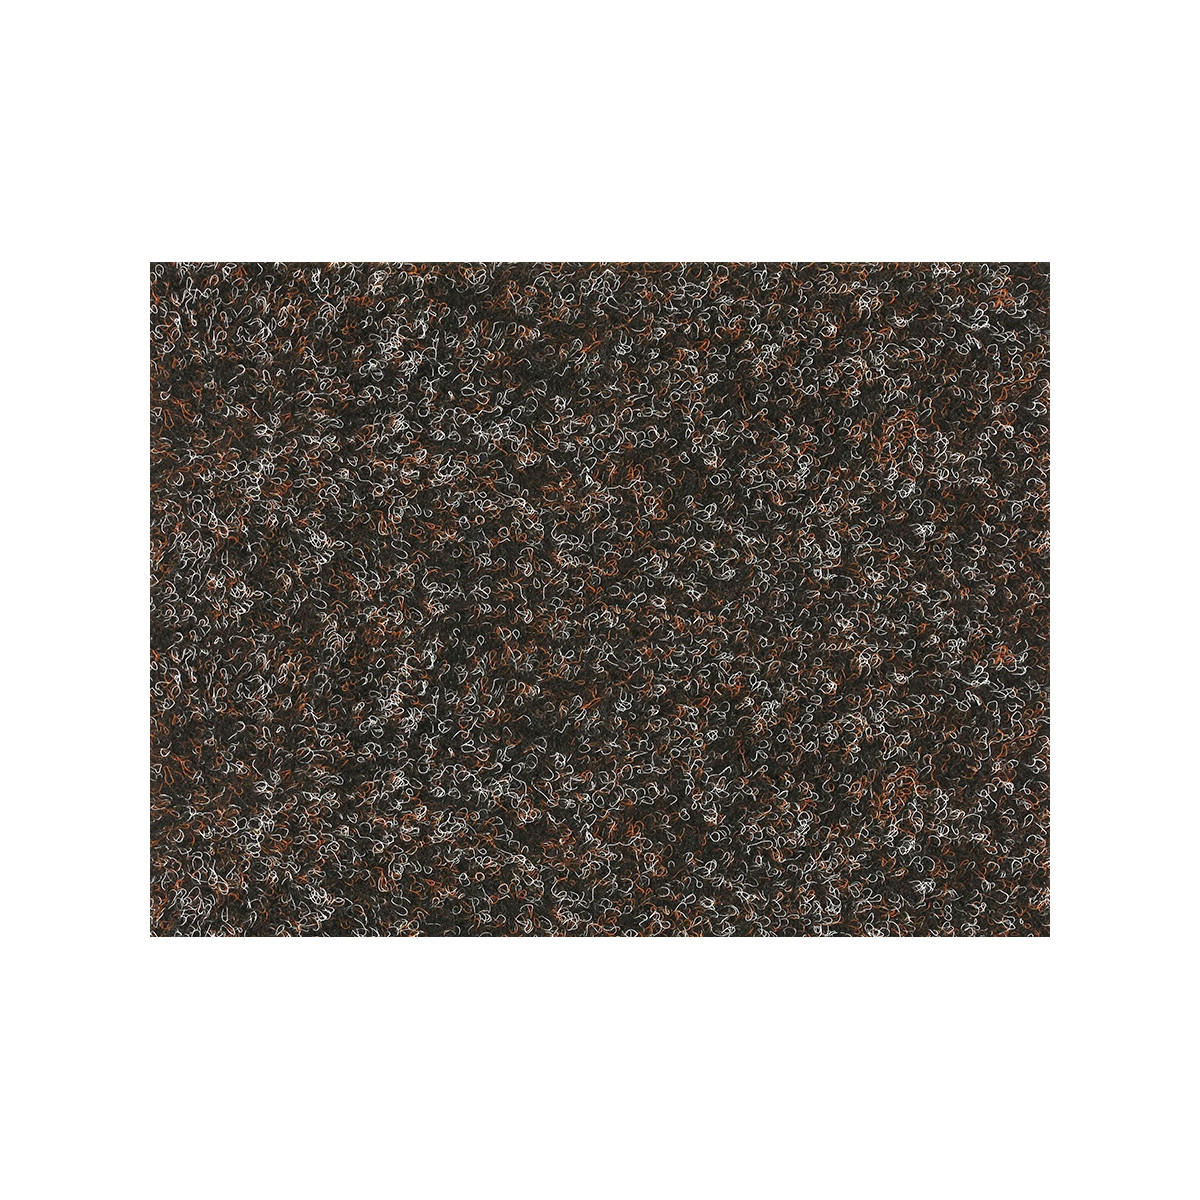 Metrážový koberec Santana 80 hnědá s podkladem resine, zátěžový